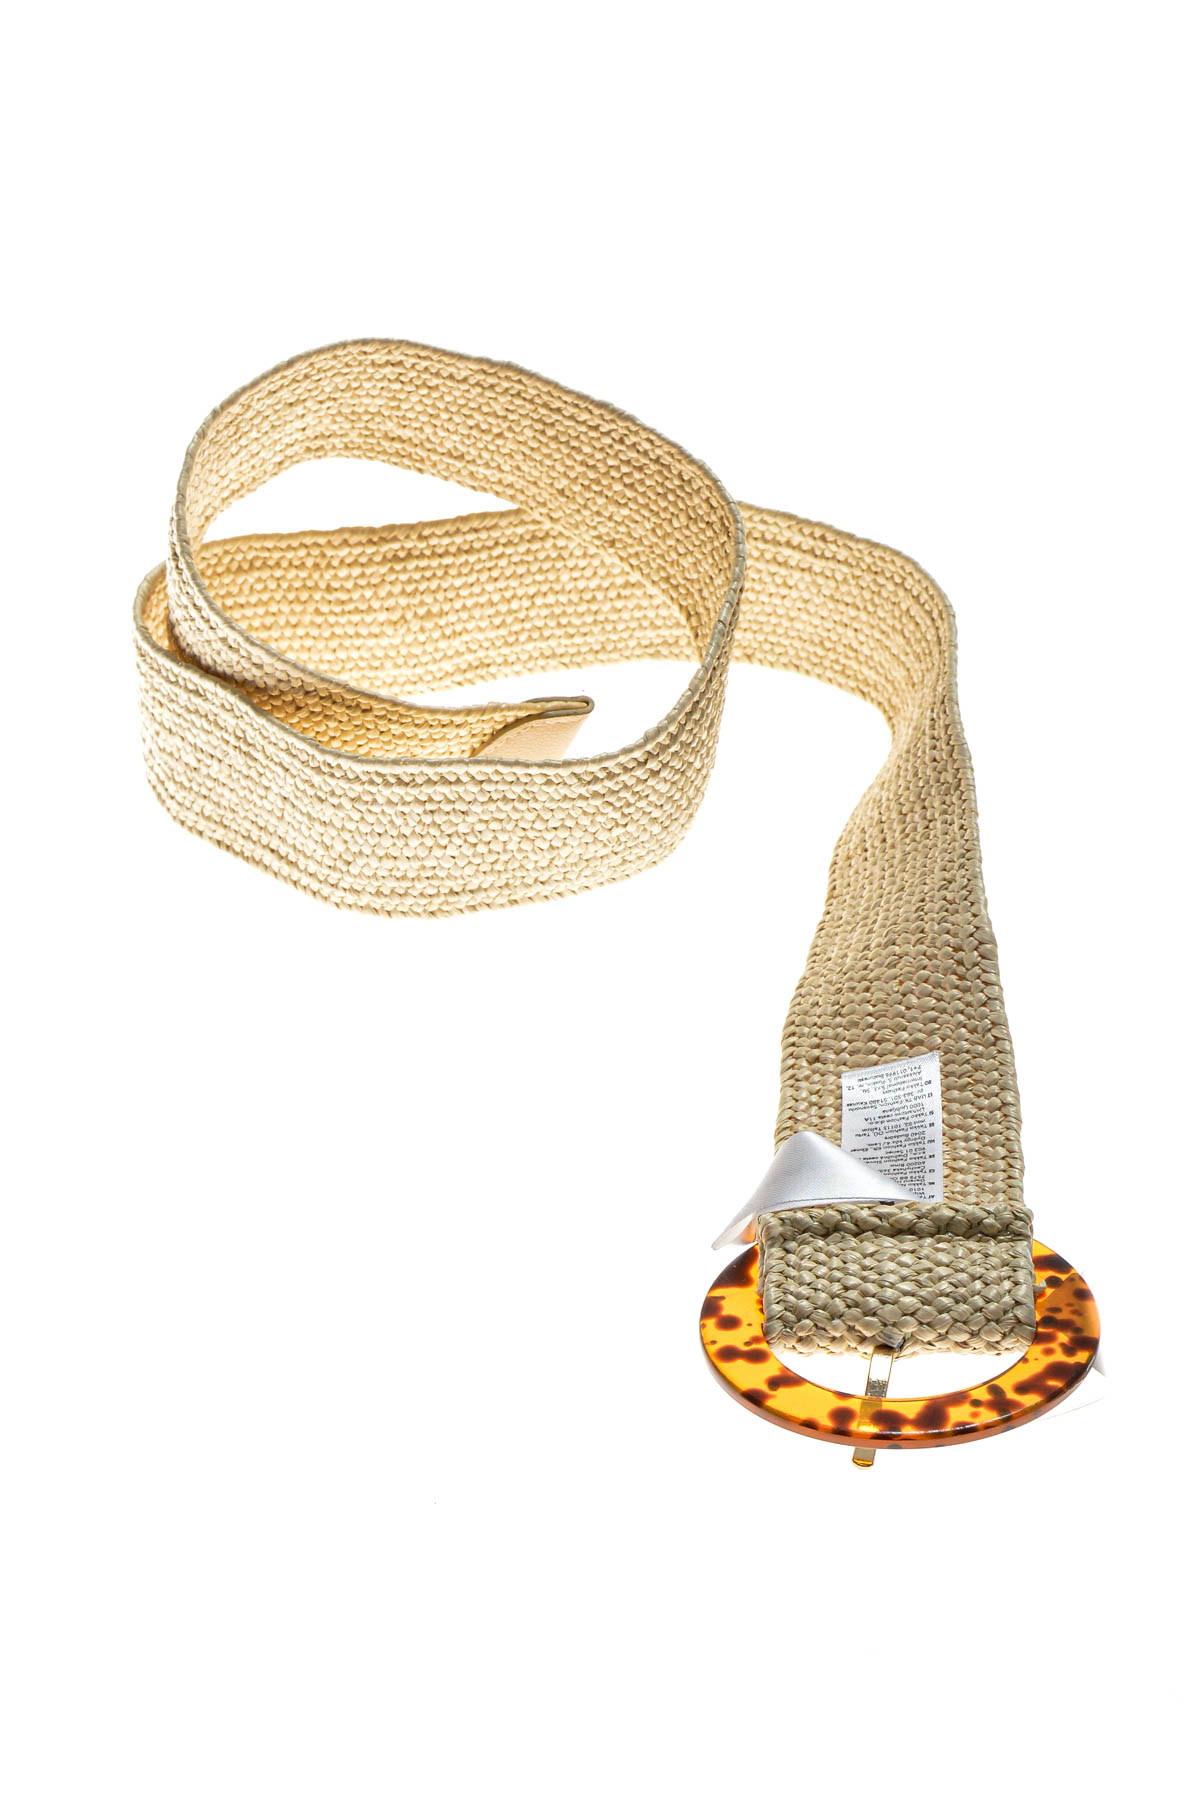 Ladies's belt - Accessories by Takko Fashion - 1